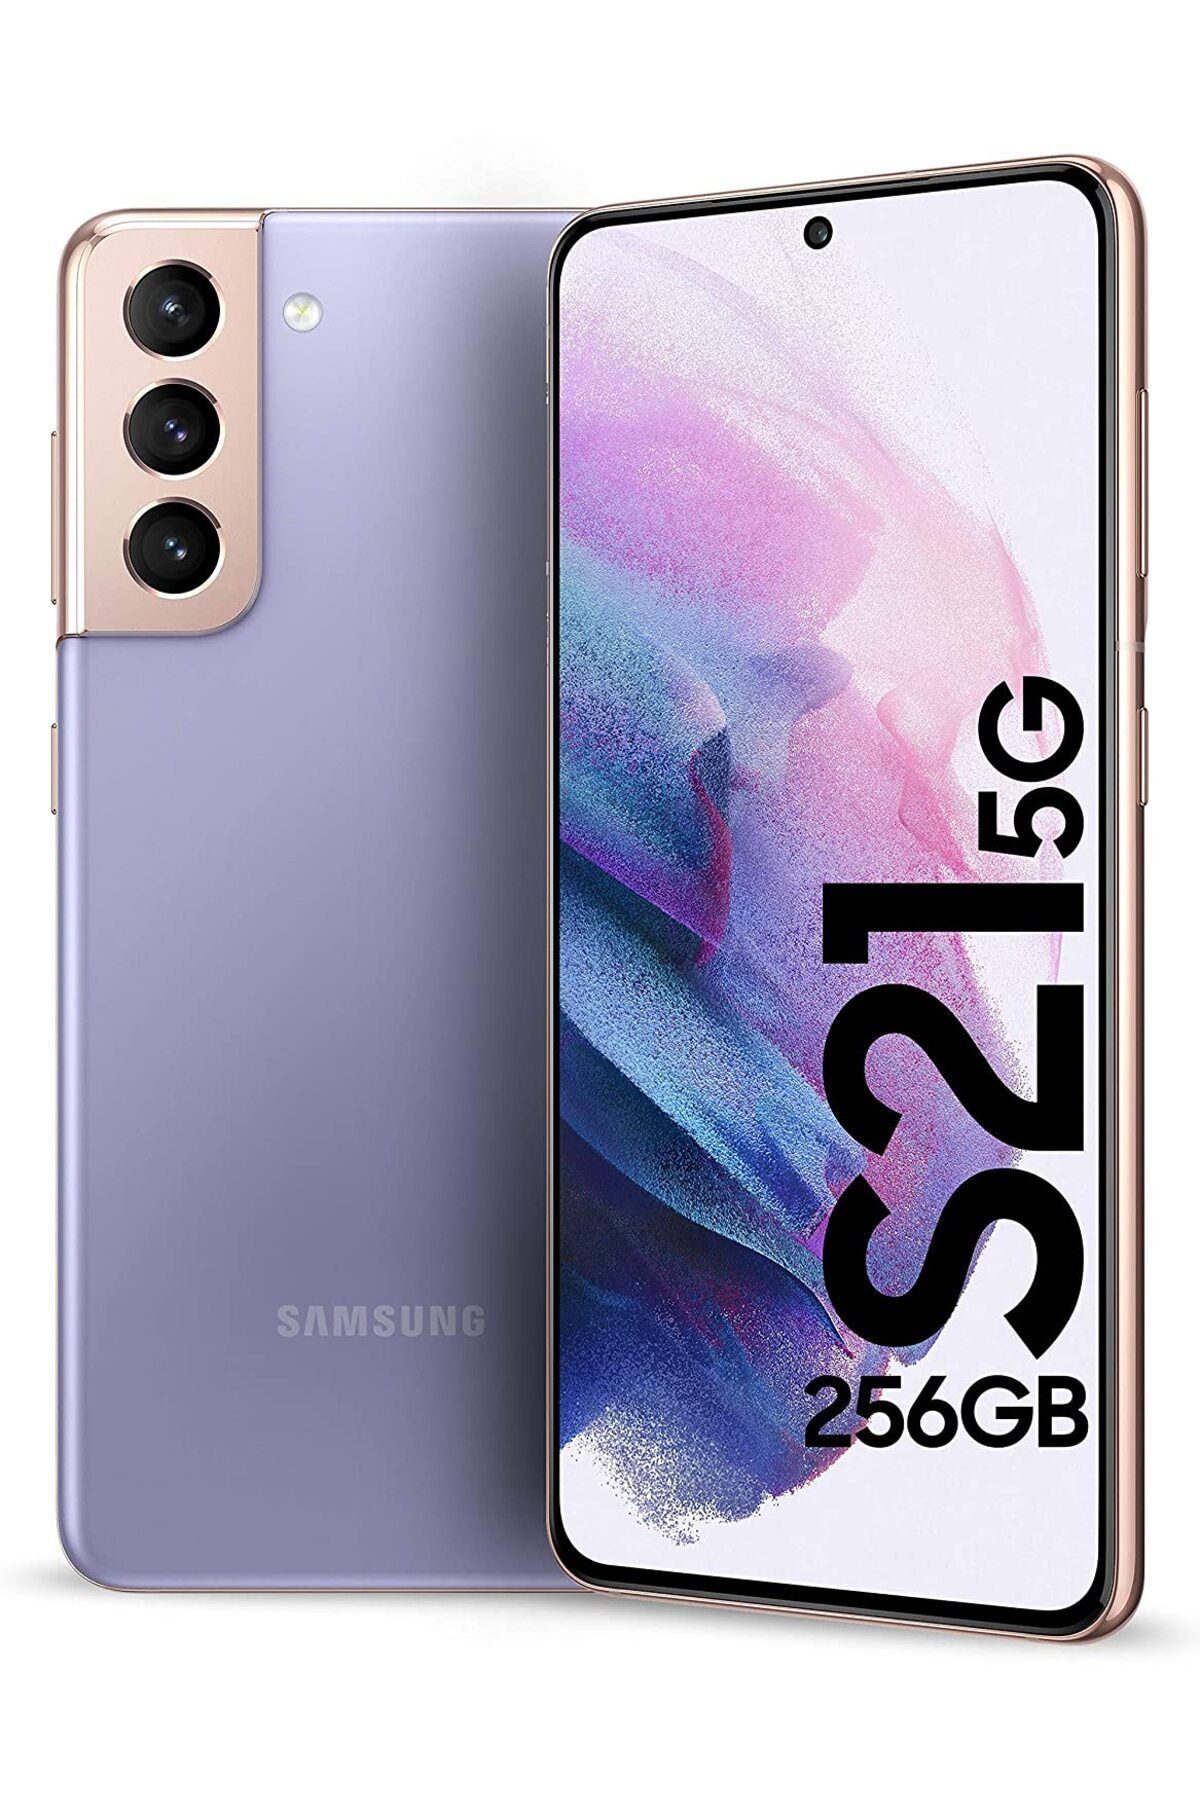 Samsung Yenilenmiş Samsung Galaxy S21 128GB Mor B Kalite